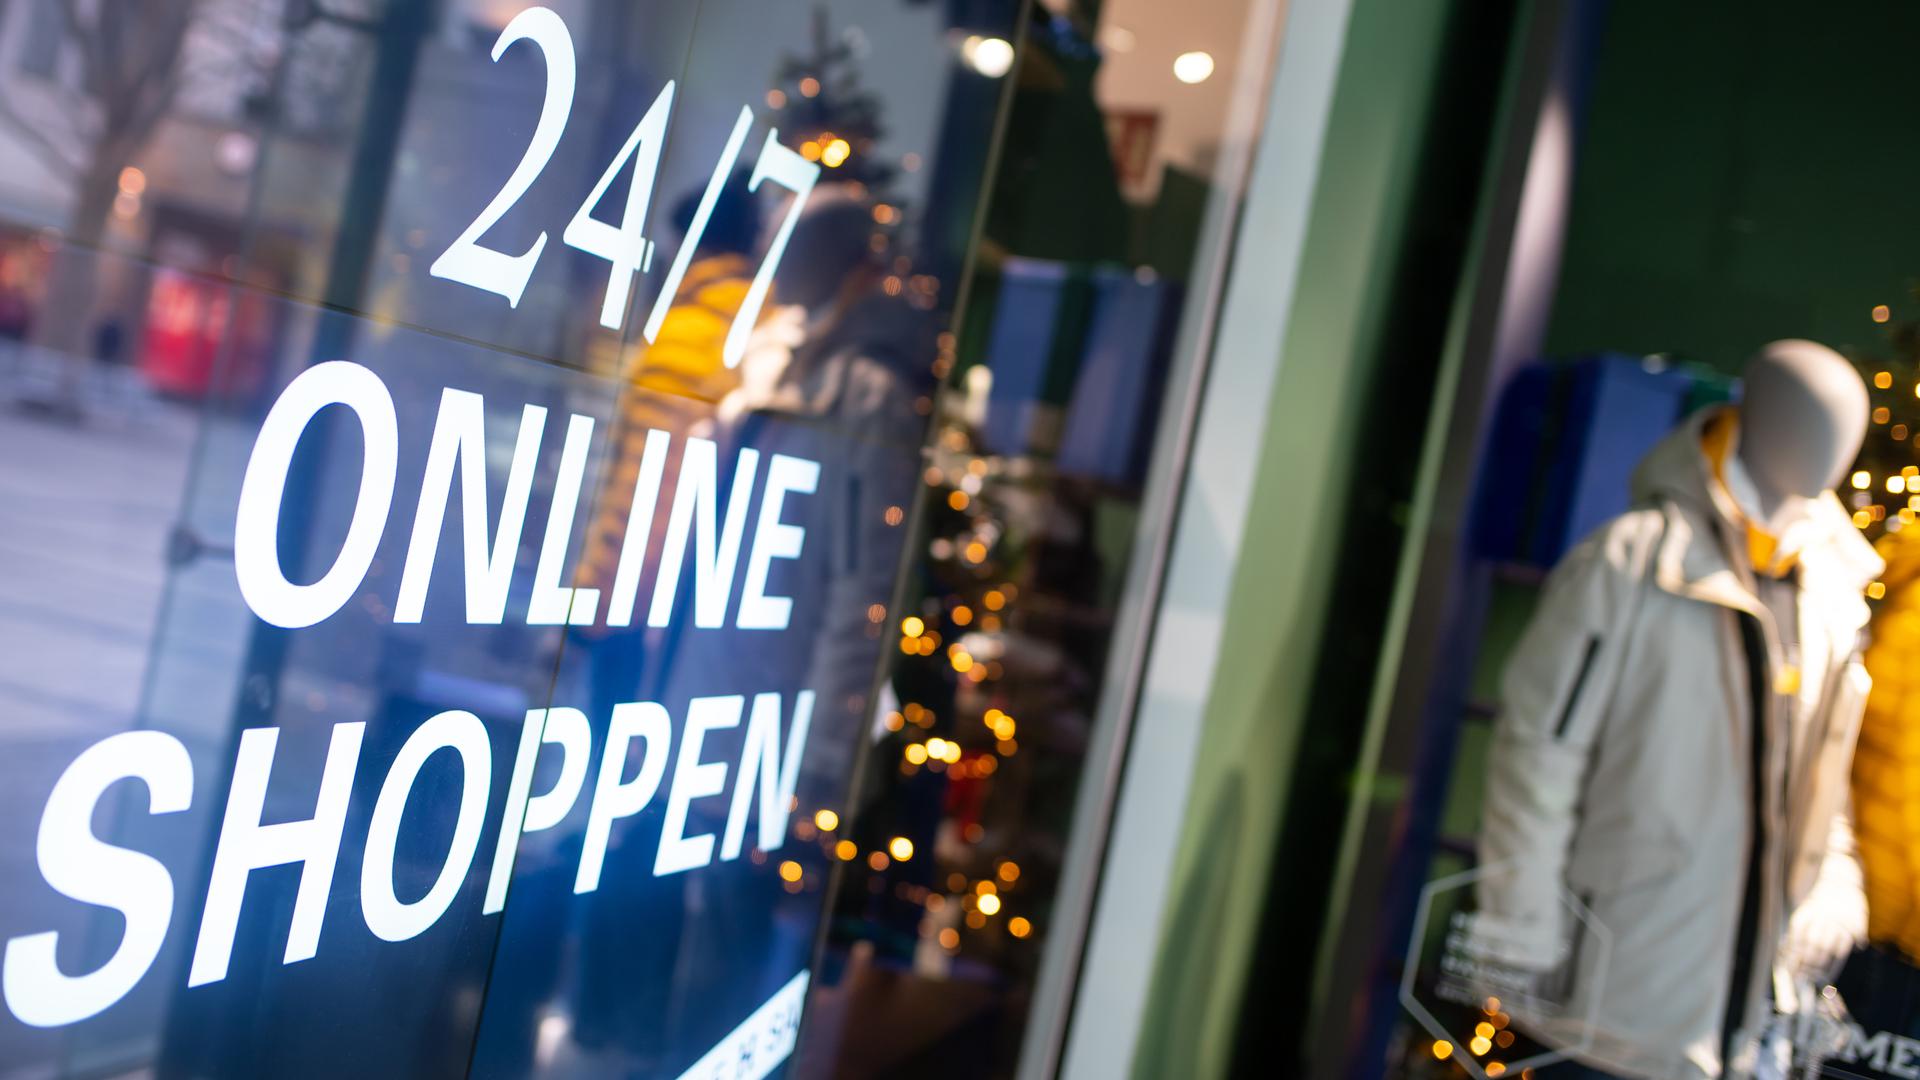 Ein Bildschirm mit der Aufschrift "24/7 Online Shoppen" ist im Schaufenster von einem geschlossenen Geschäft in der Innenstadt zu sehen. 